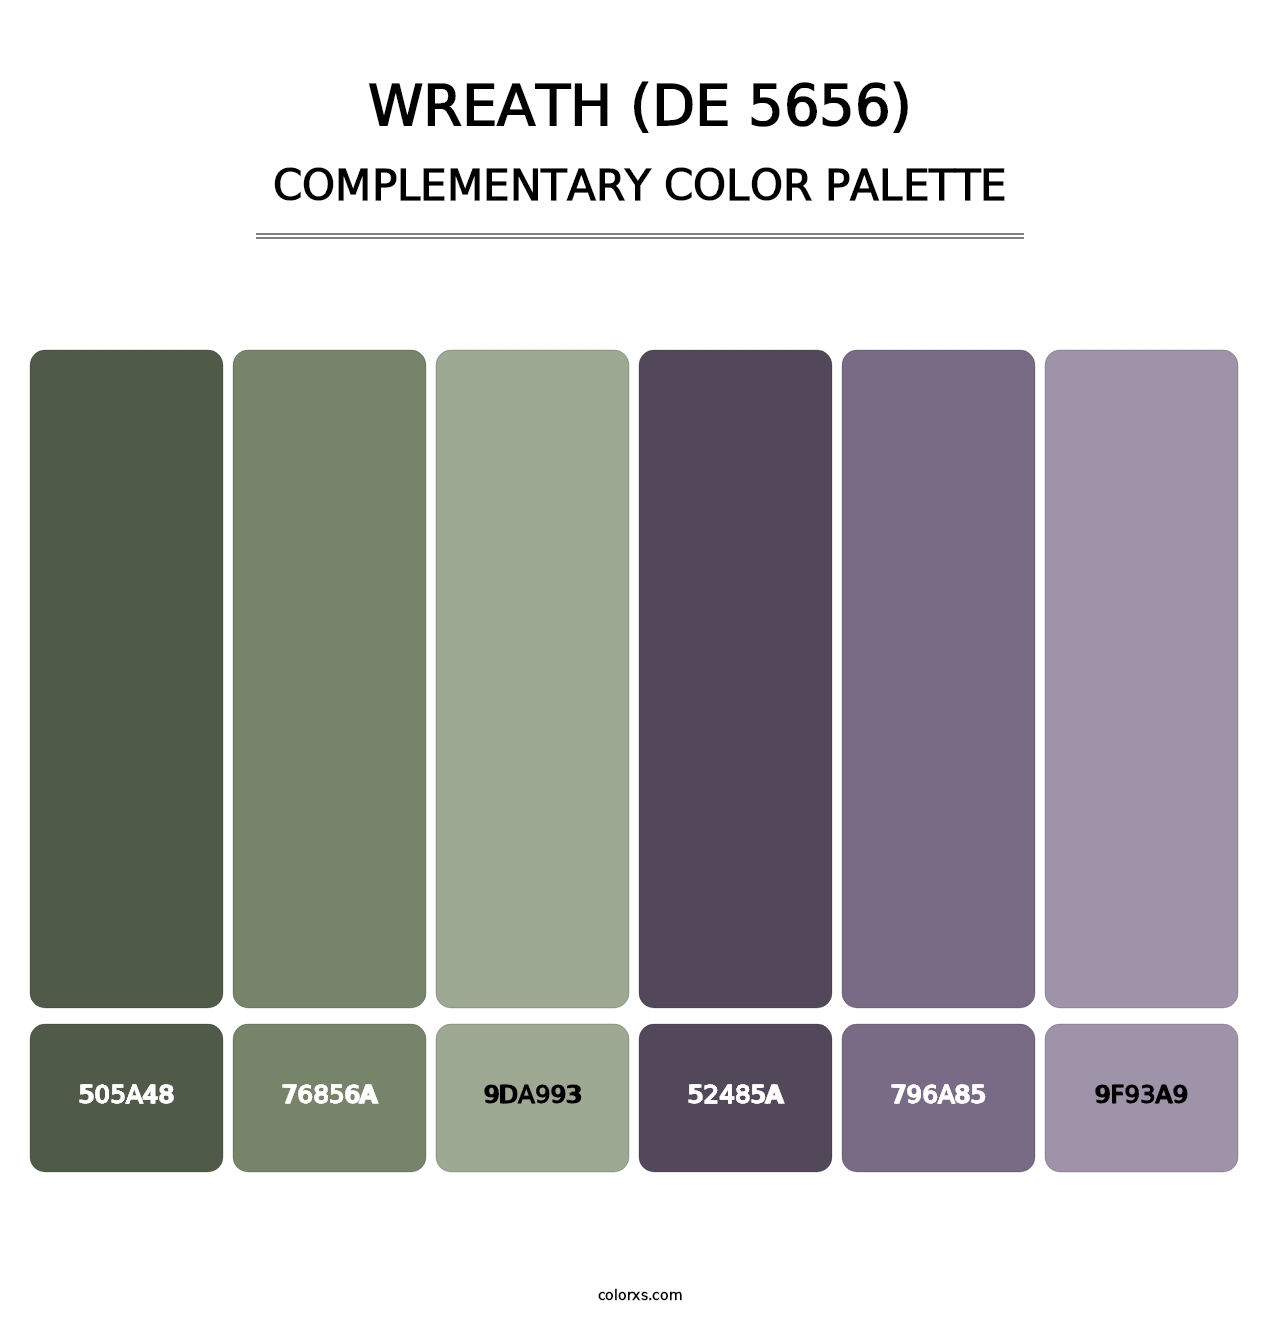 Wreath (DE 5656) - Complementary Color Palette